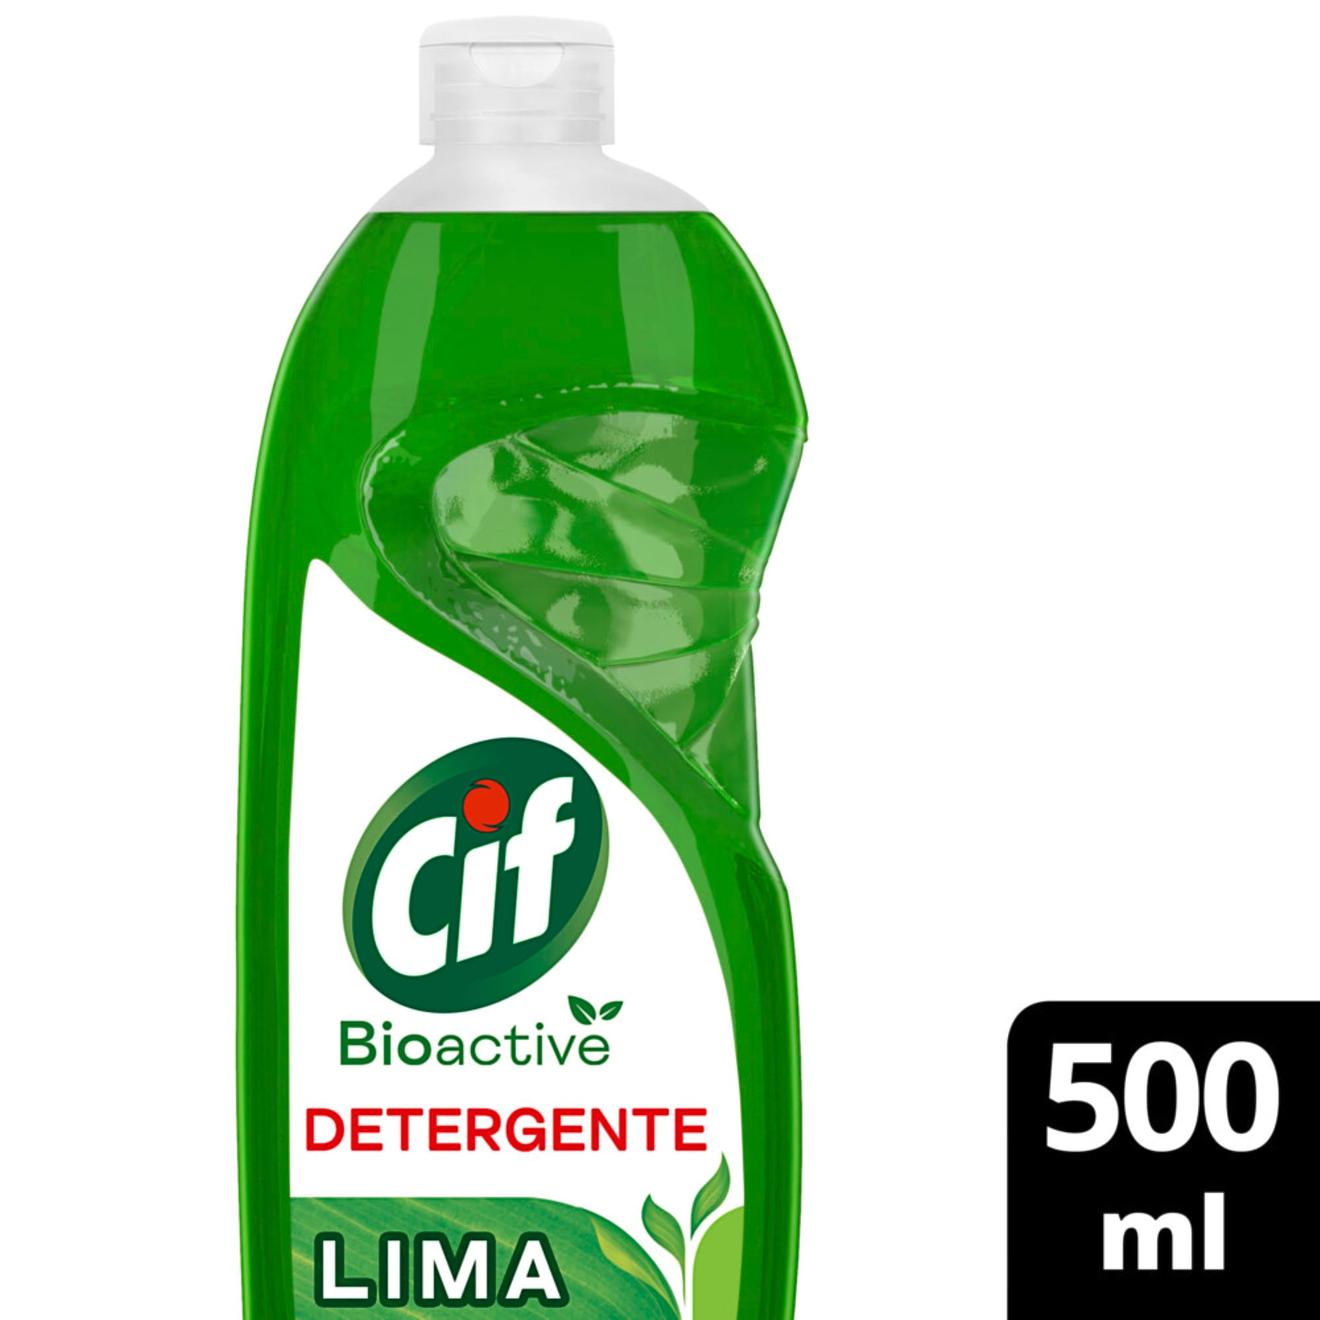 Oferta de Detergente Cif bioactive lima 500 cc. por $1715 en Carrefour